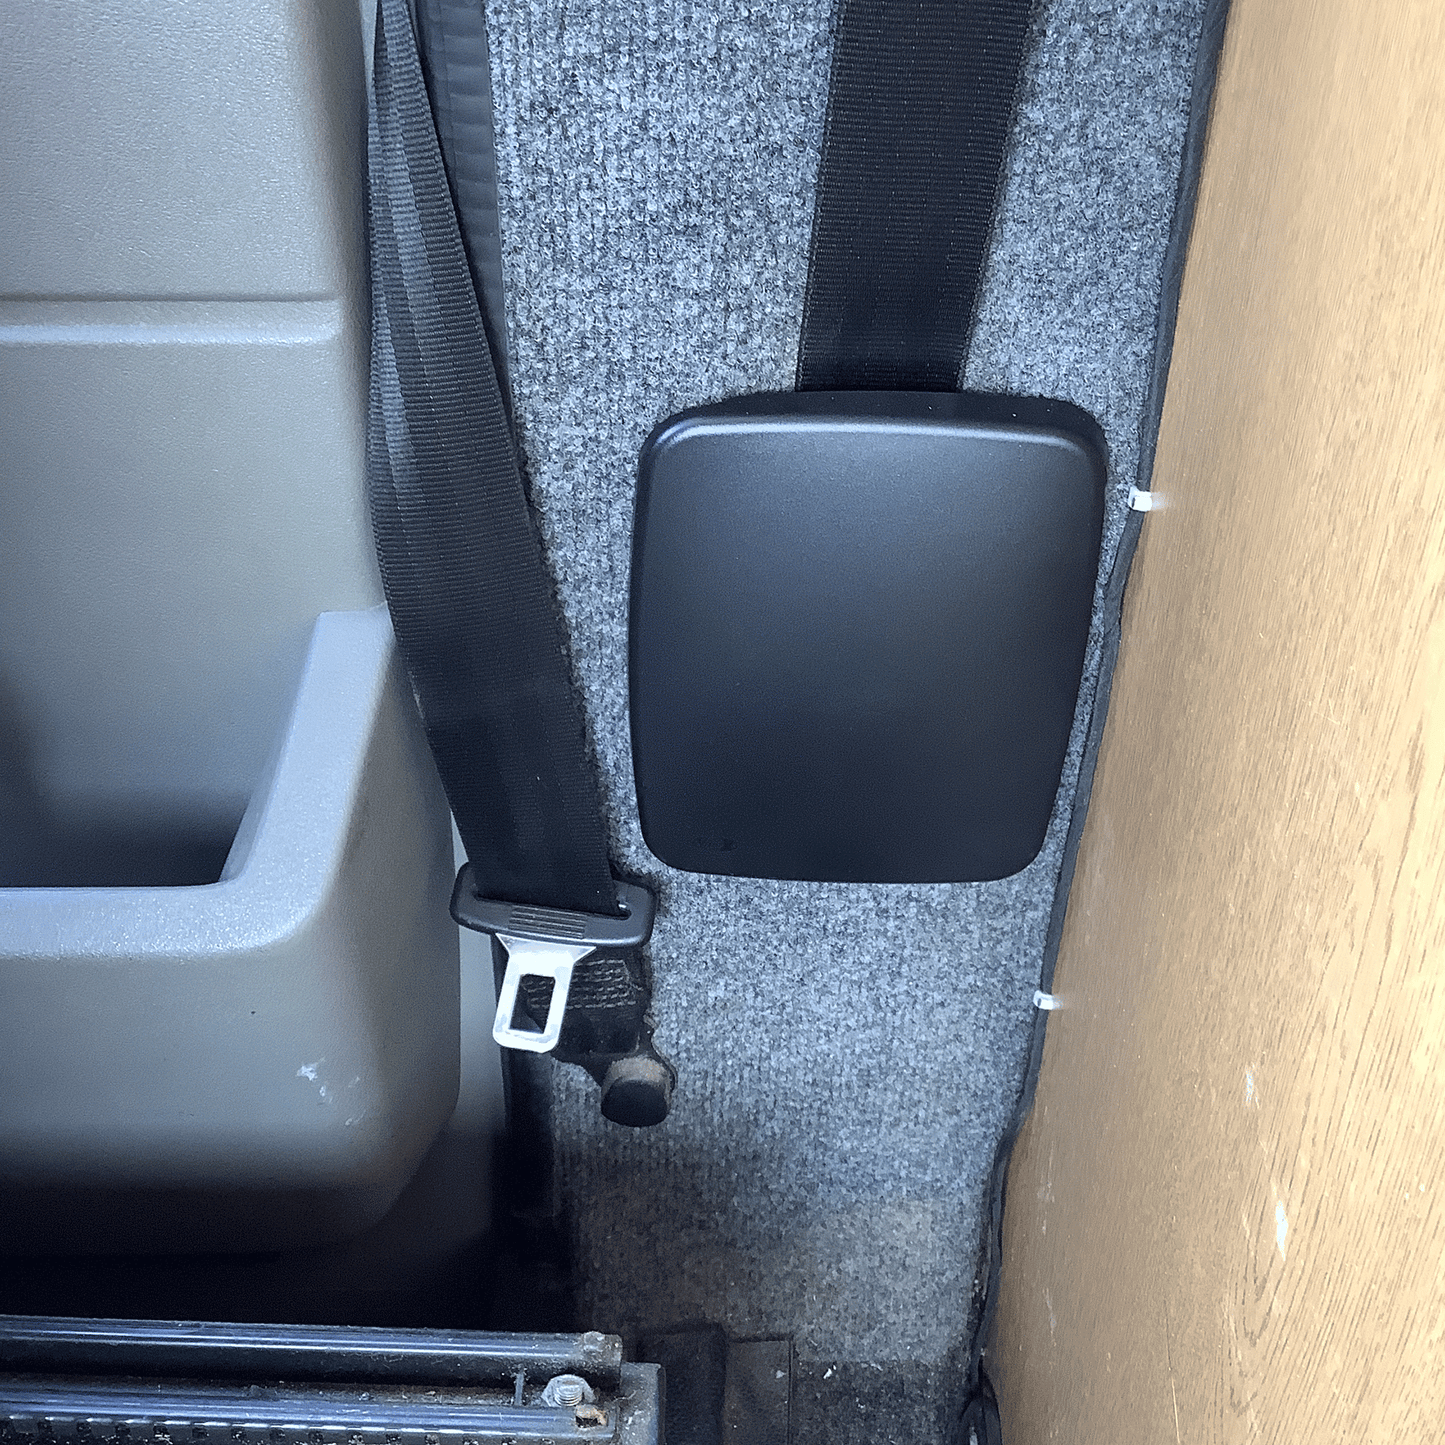 Für Van-X, Abdeckung Verkleidung Gurt Sicherheitsgurt links für VW Bus T4 Vw Nr.: 701857827